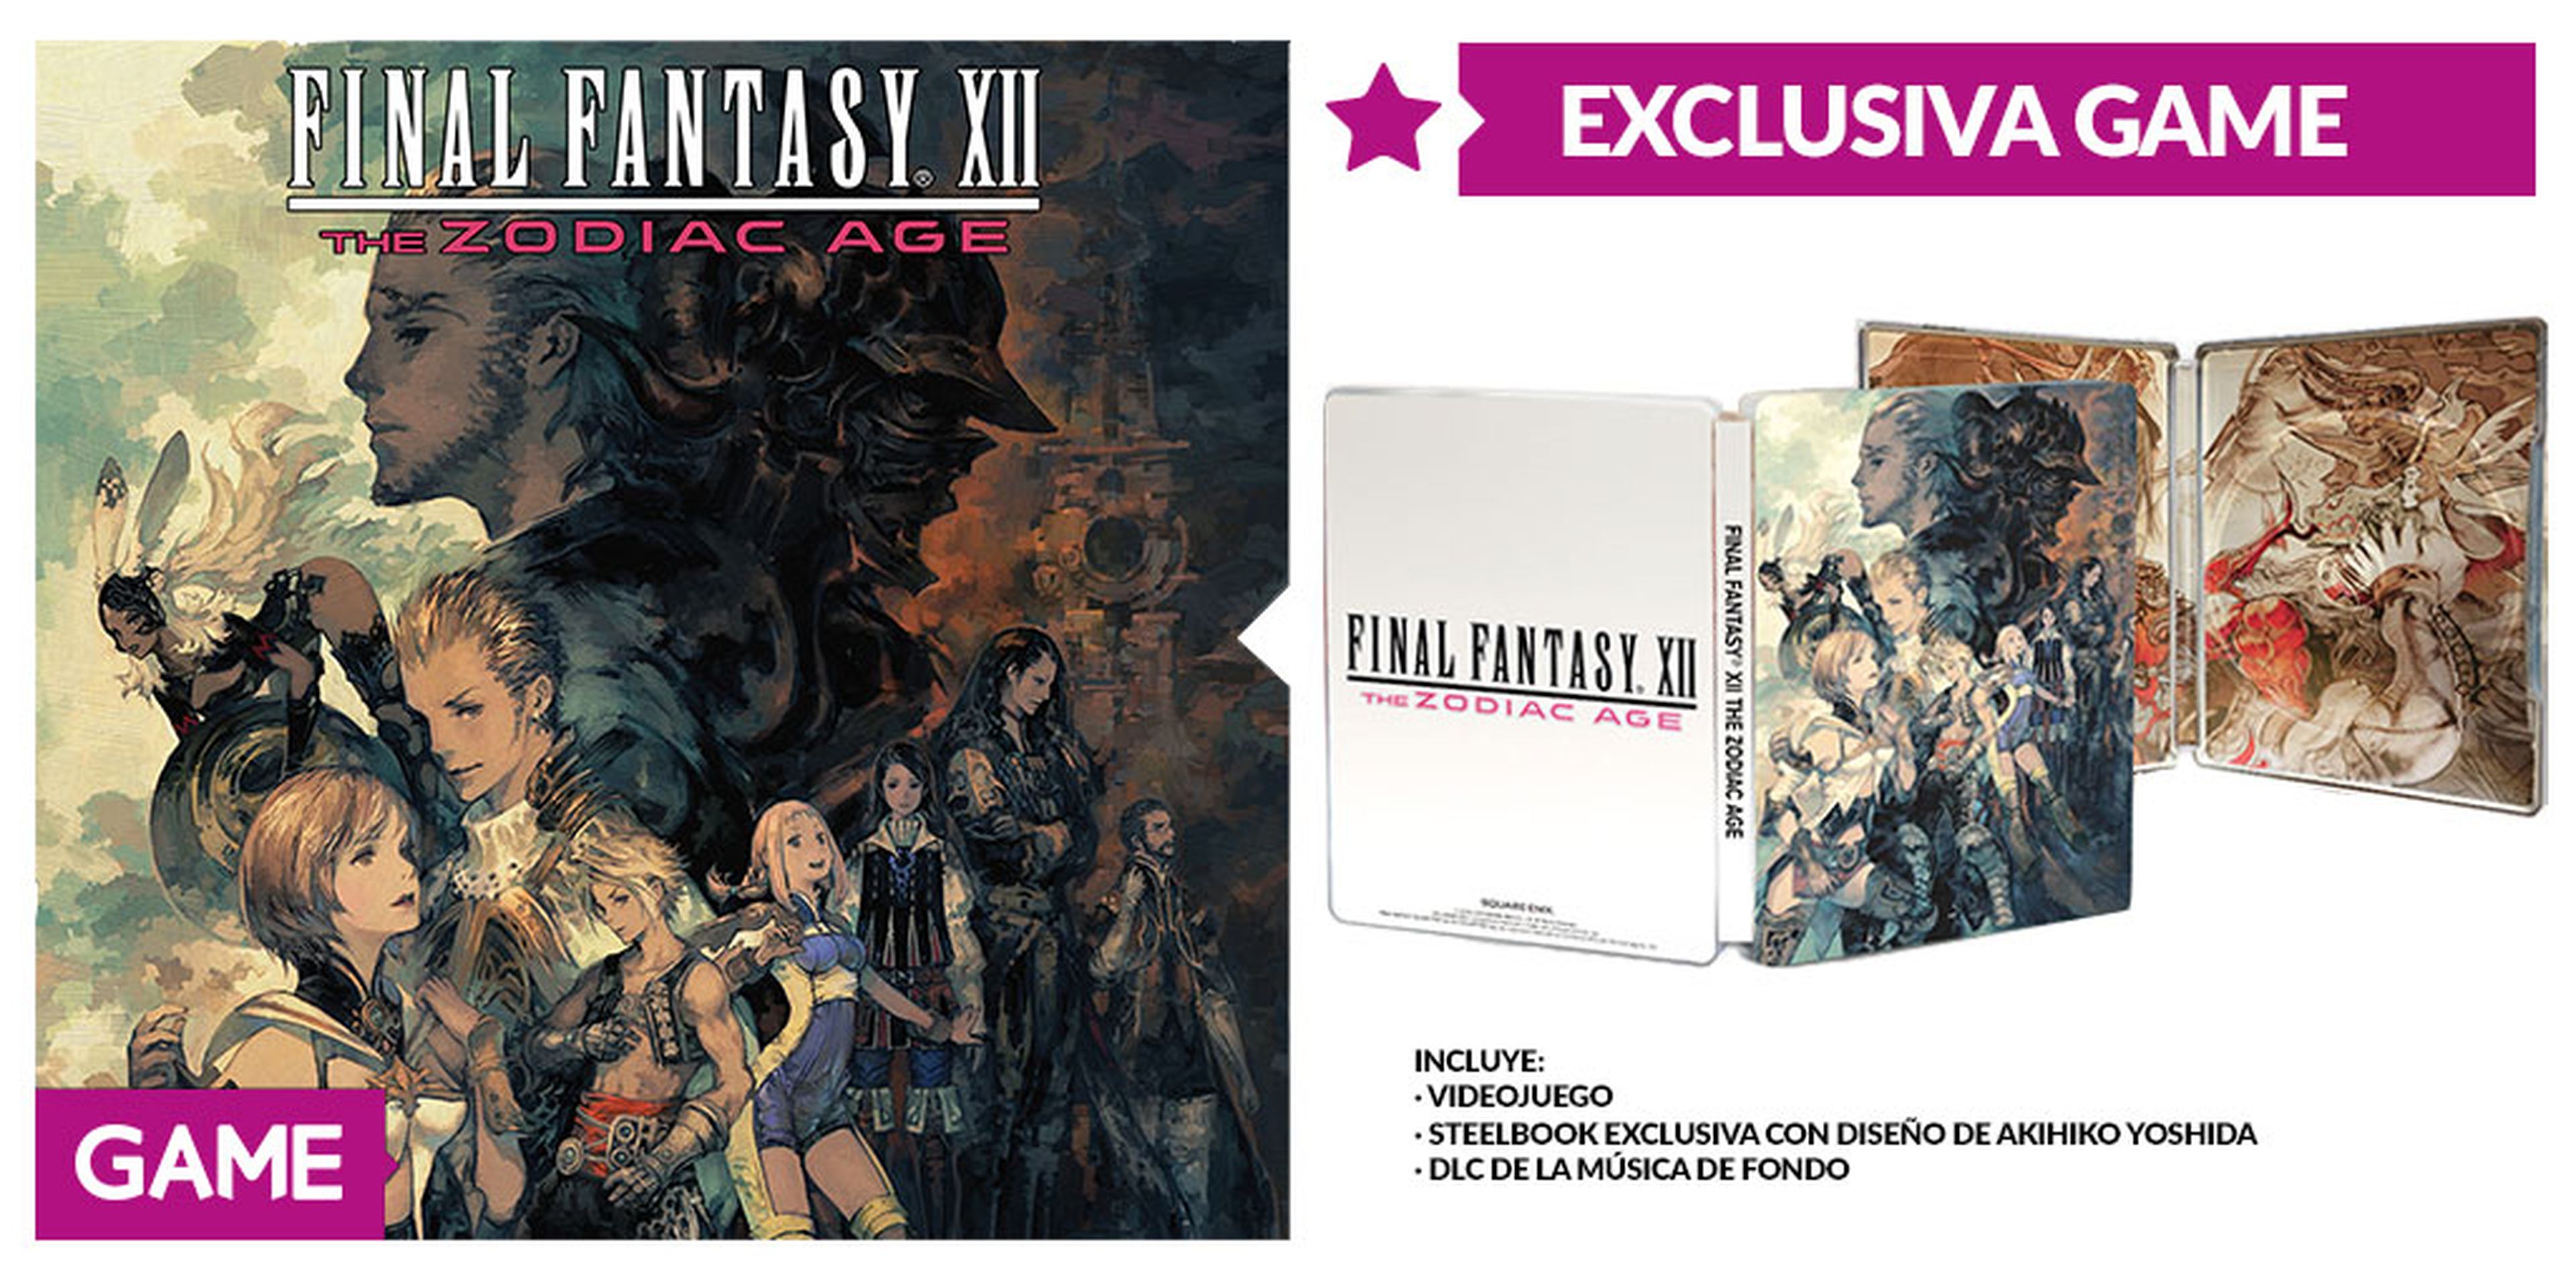 Final Fantasy XII The Zodiac Age Edición Exclusiva de GAME